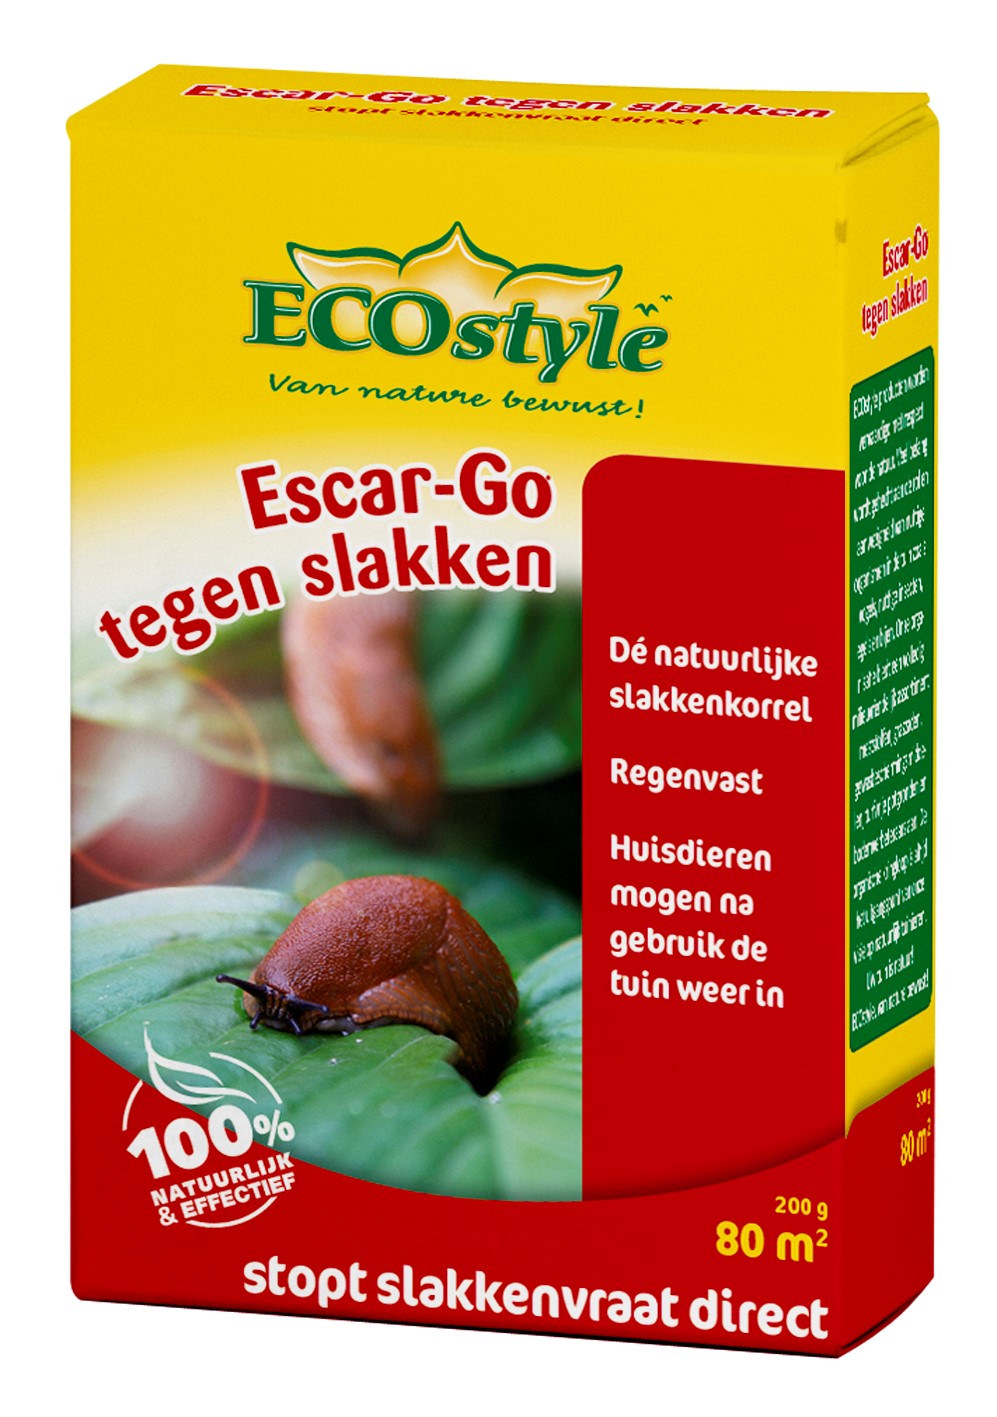 Afbeelding Ecostyle Escar-Go tegen Slakken door Haxo.nl